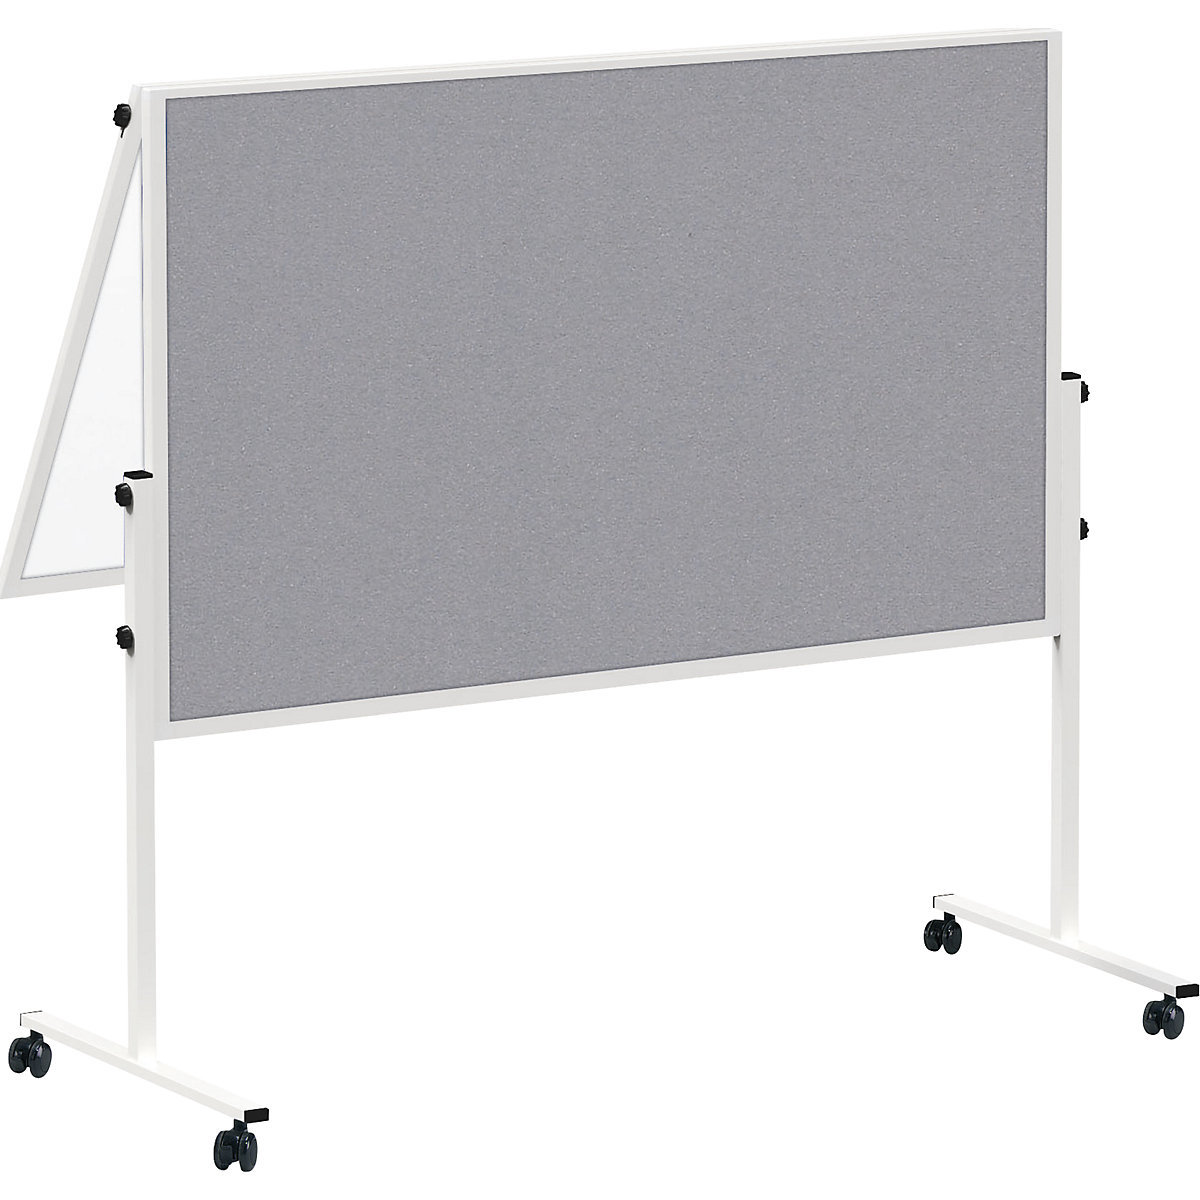 Tablica do prezentacji MAULsolid, mobilna – MAUL, składana, biała tablica/powierzchnia z szarego filcu-4